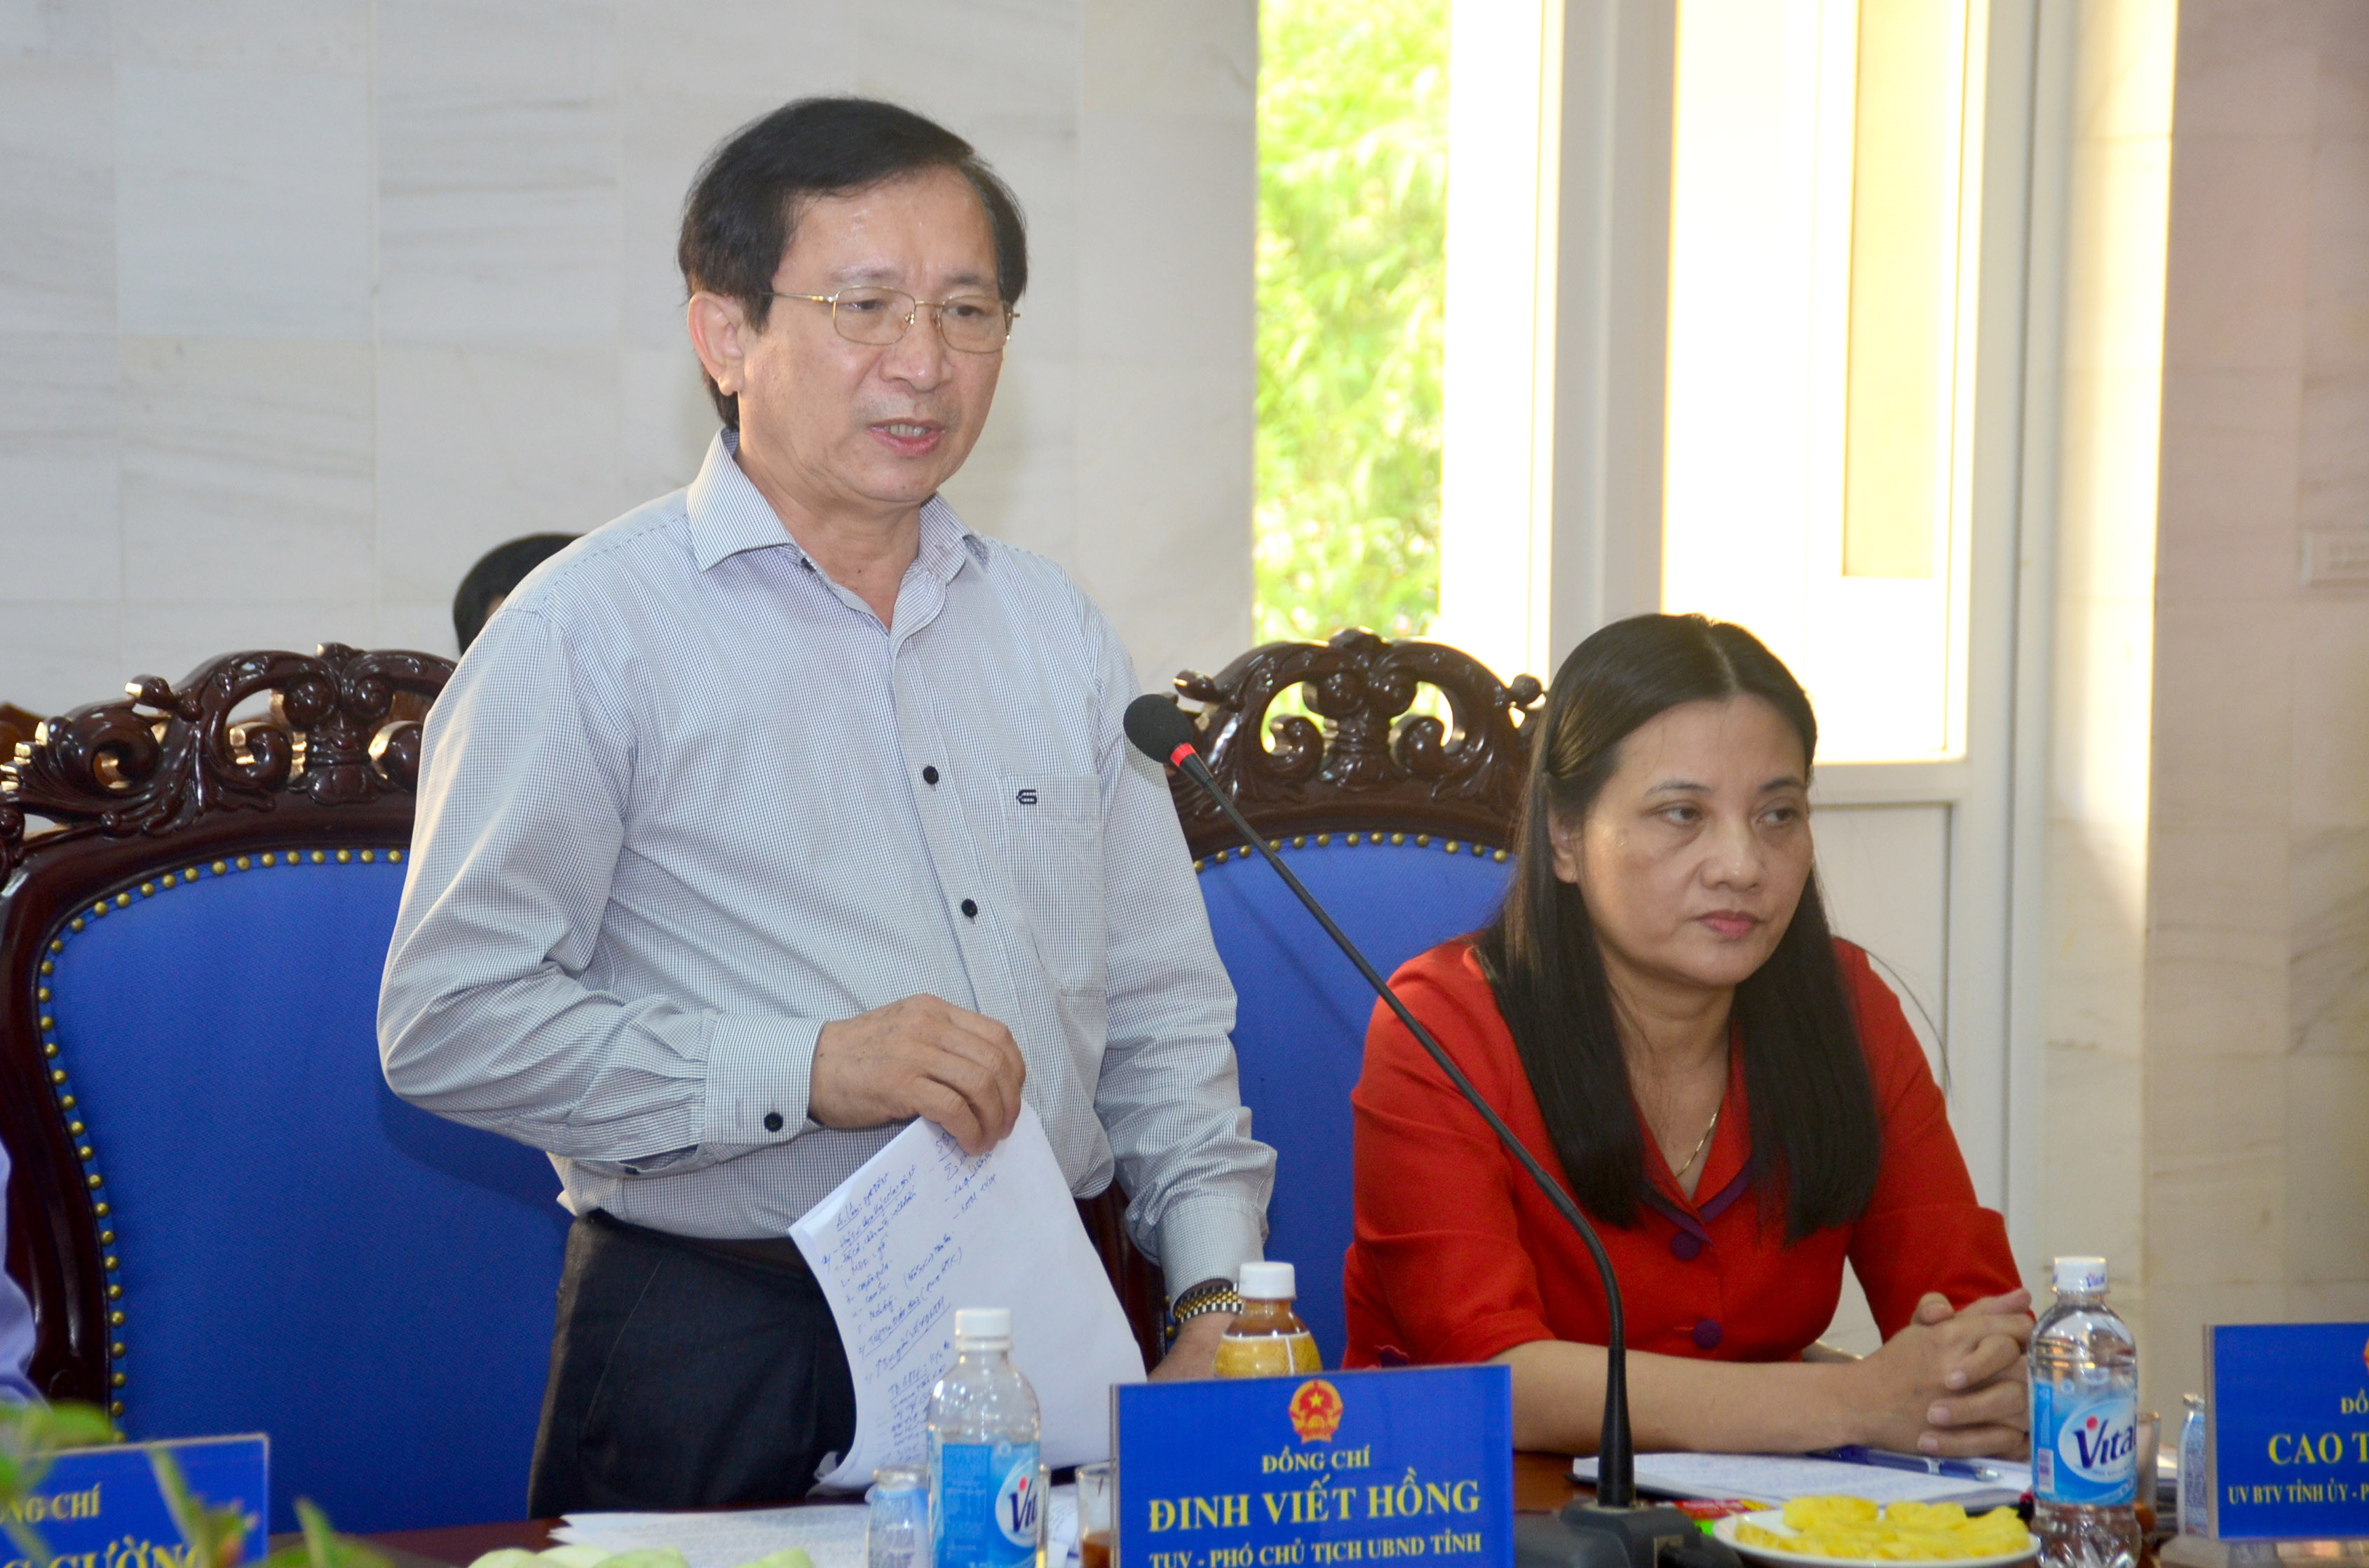 Phó Chủ tịch UBND tỉnh Đinh Viết Hồng phát biểu tại cuộc làm việc. Ảnh: Thành Duy